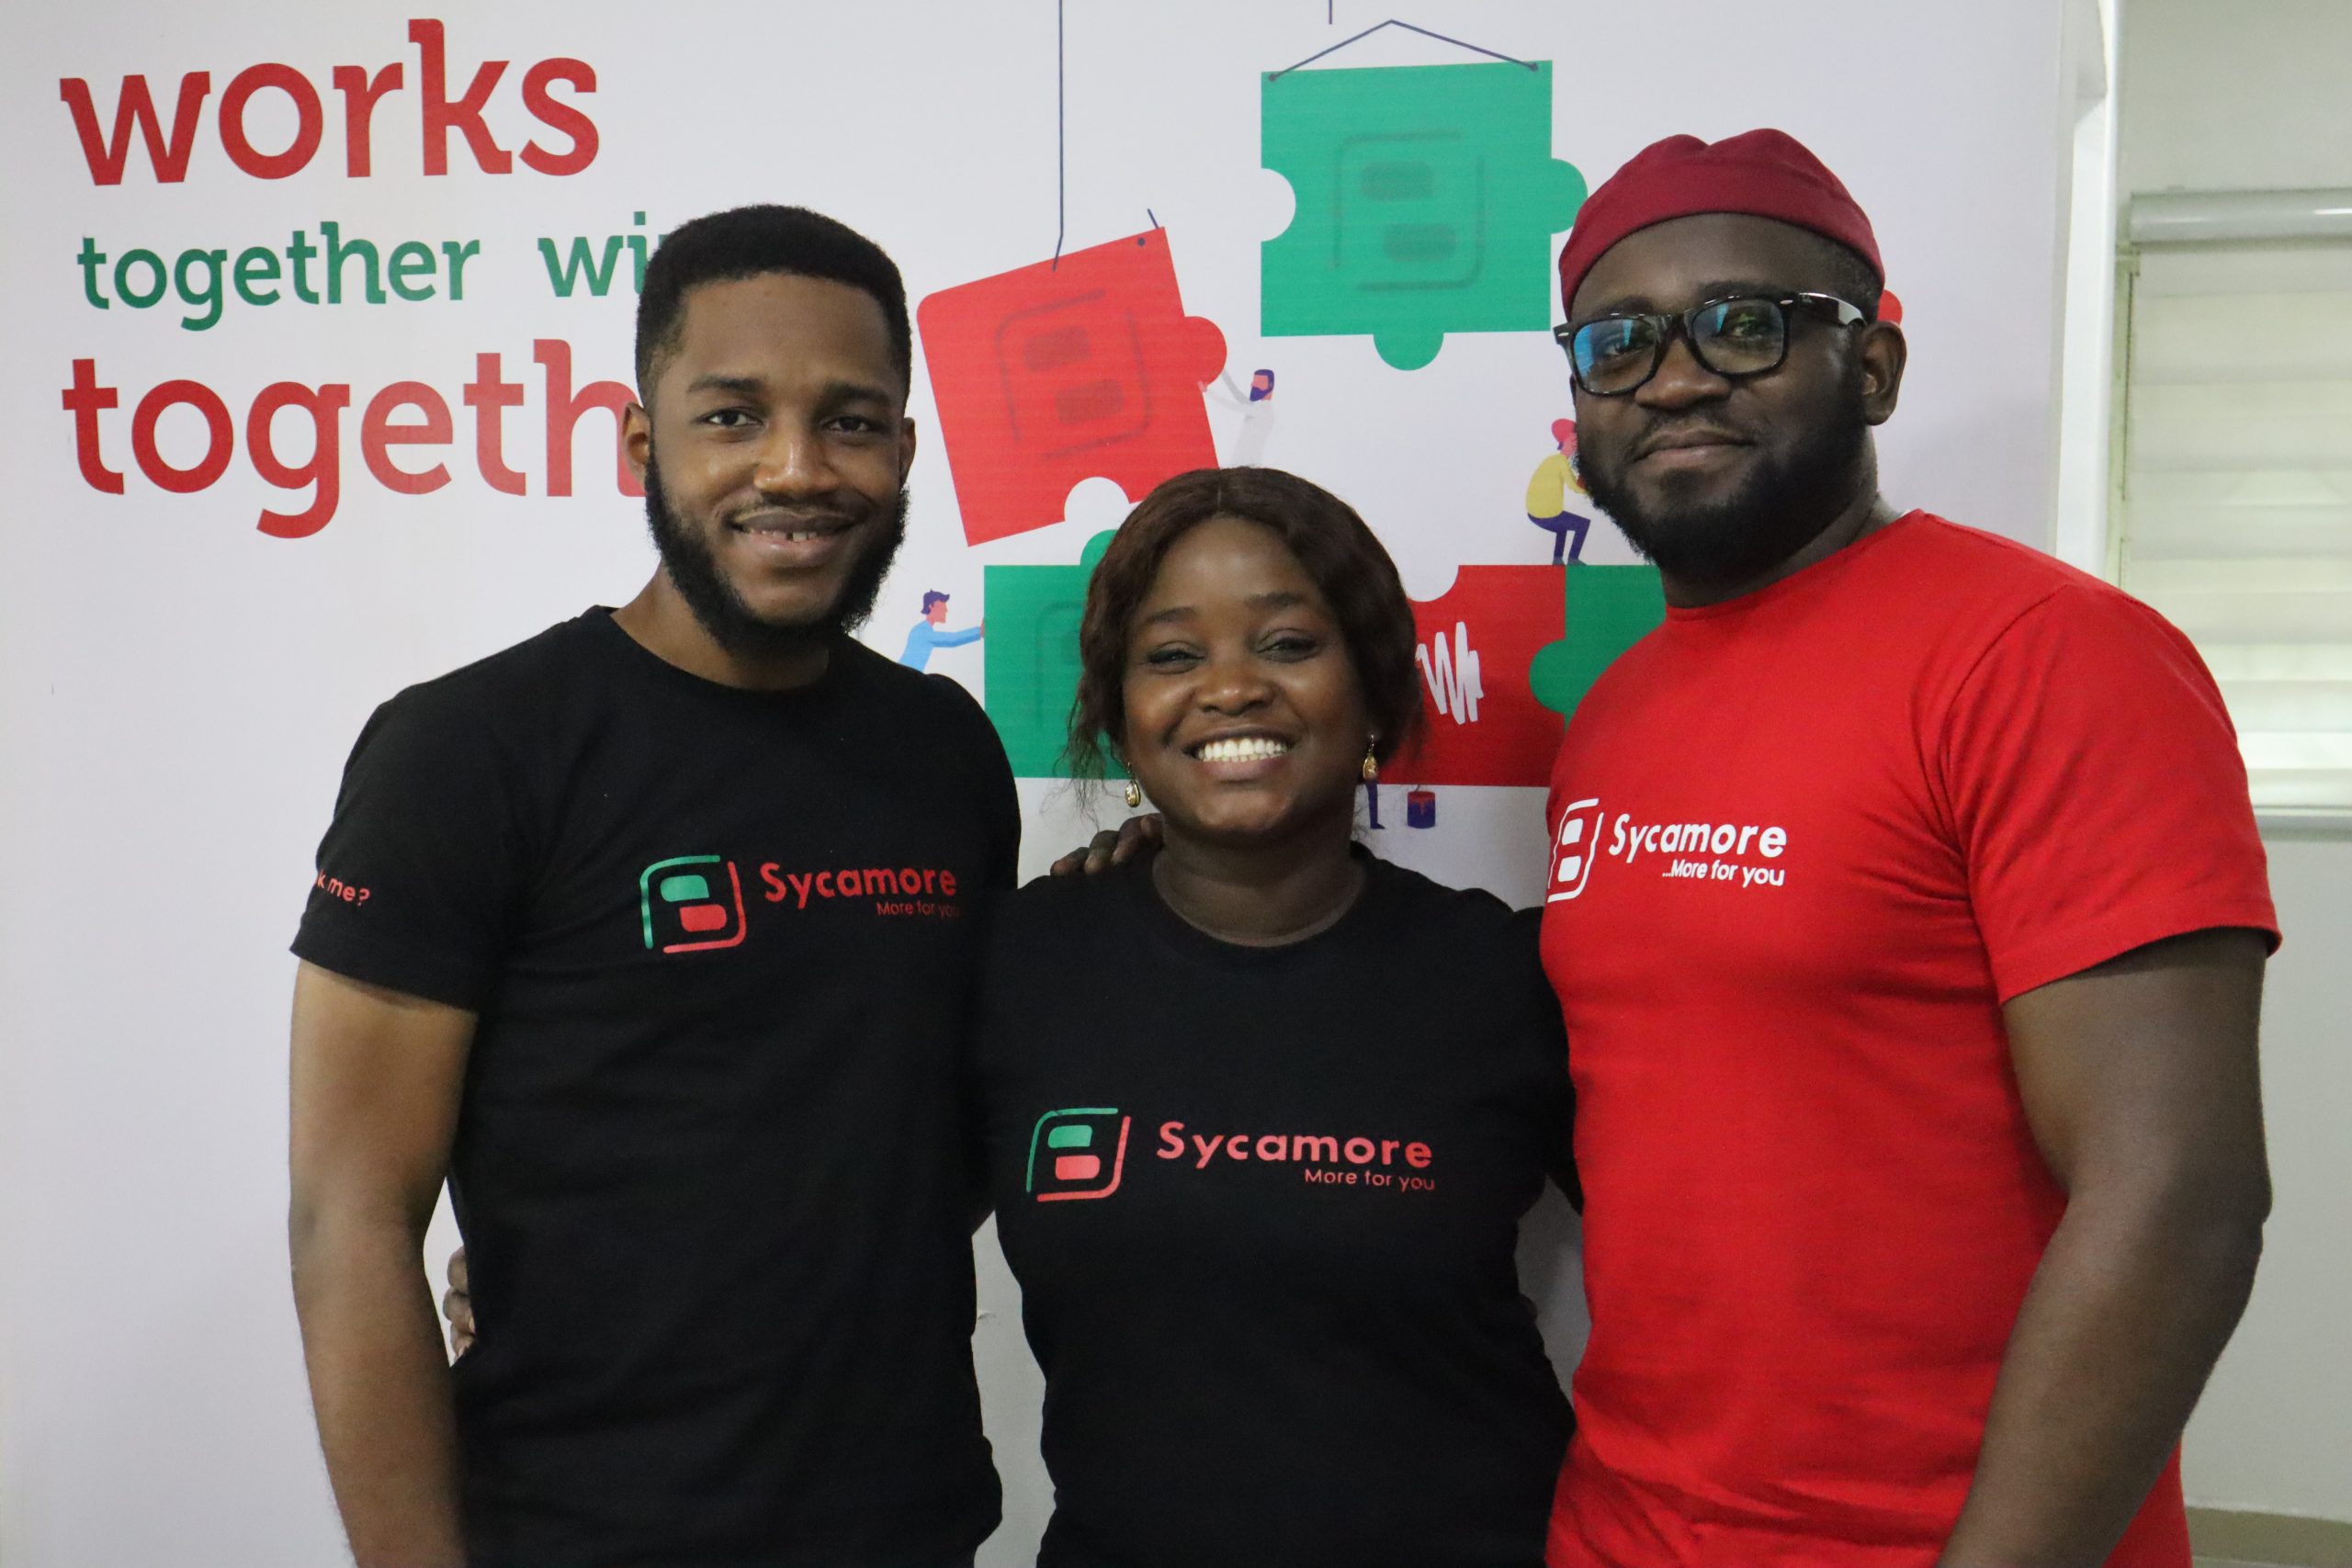 Sycamore co-founders Babatunde Akin-Moses, Onyinye Okonji and Mayowa Adeosun